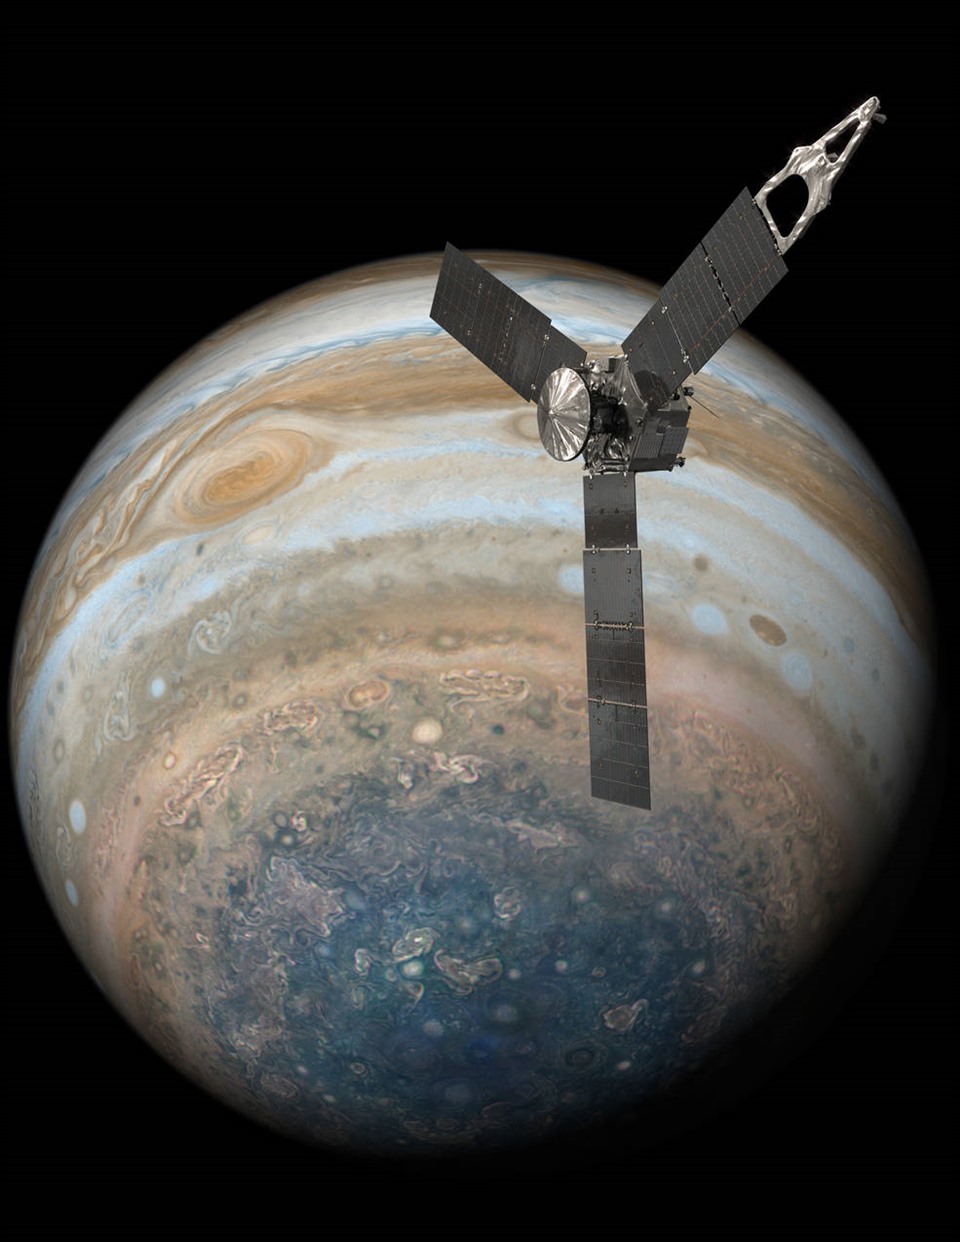 Ảnh minh họa tàu vũ trụ Juno quay quanh sao Mộc. Ảnh: NASA/JPL-Caltech